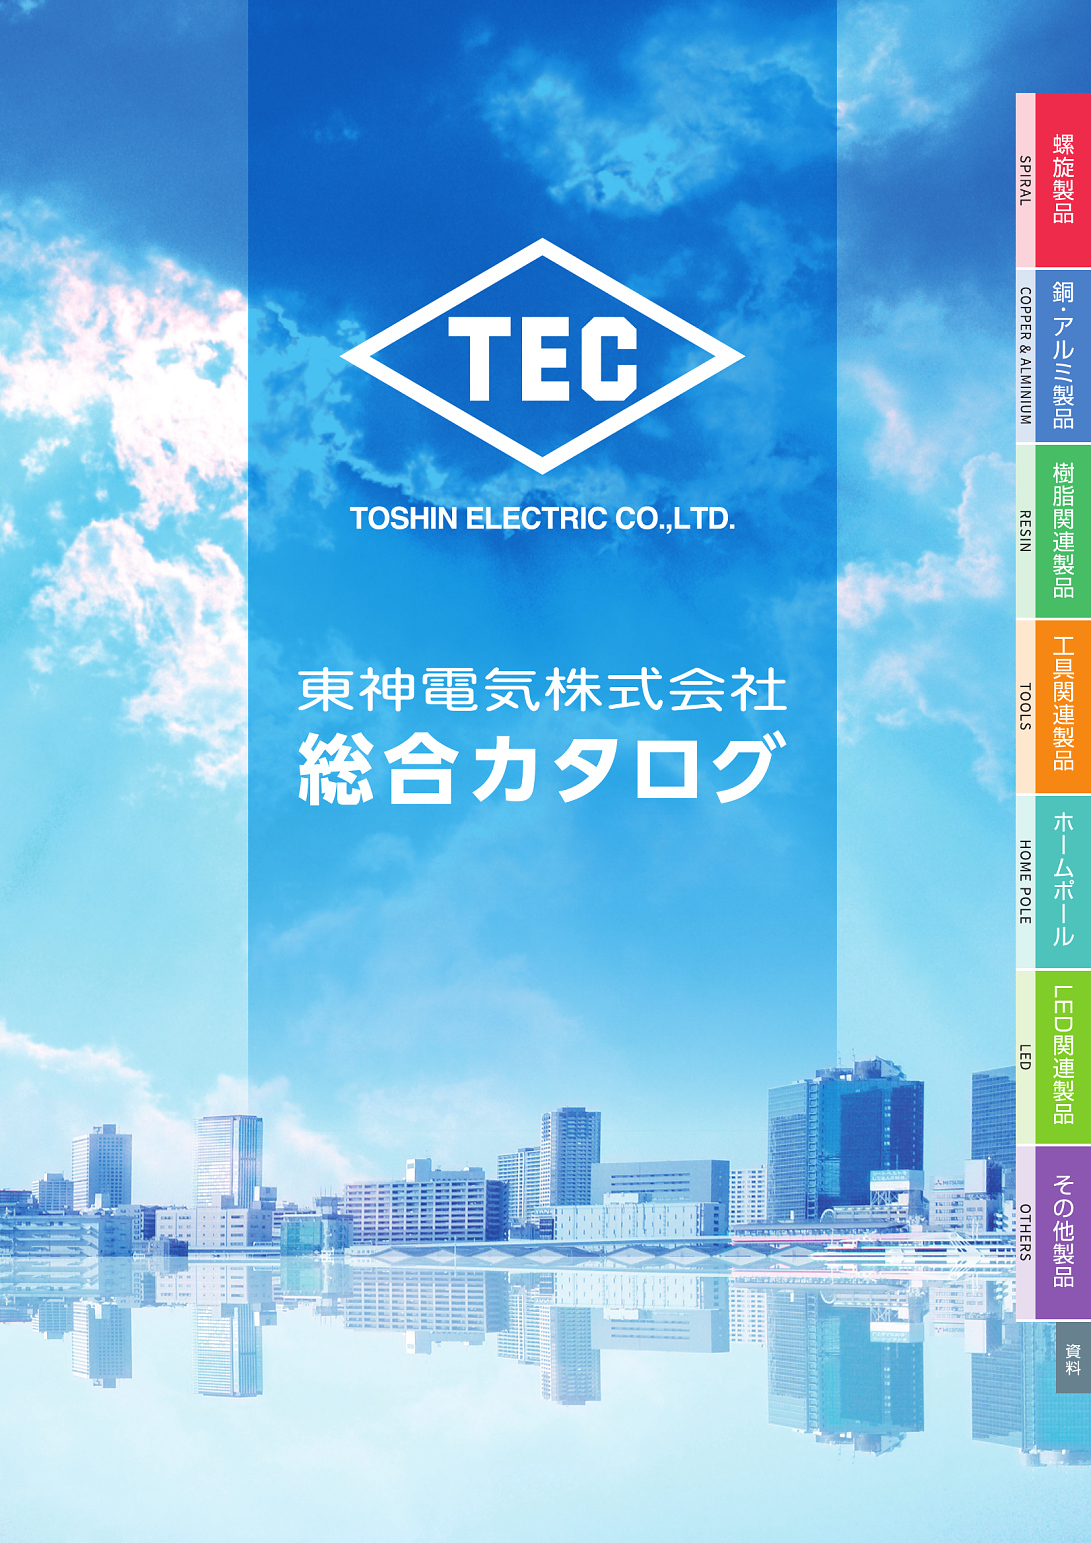 東神電気株式会社 | 東神電気株式会社総合カタログ | カタログビュー